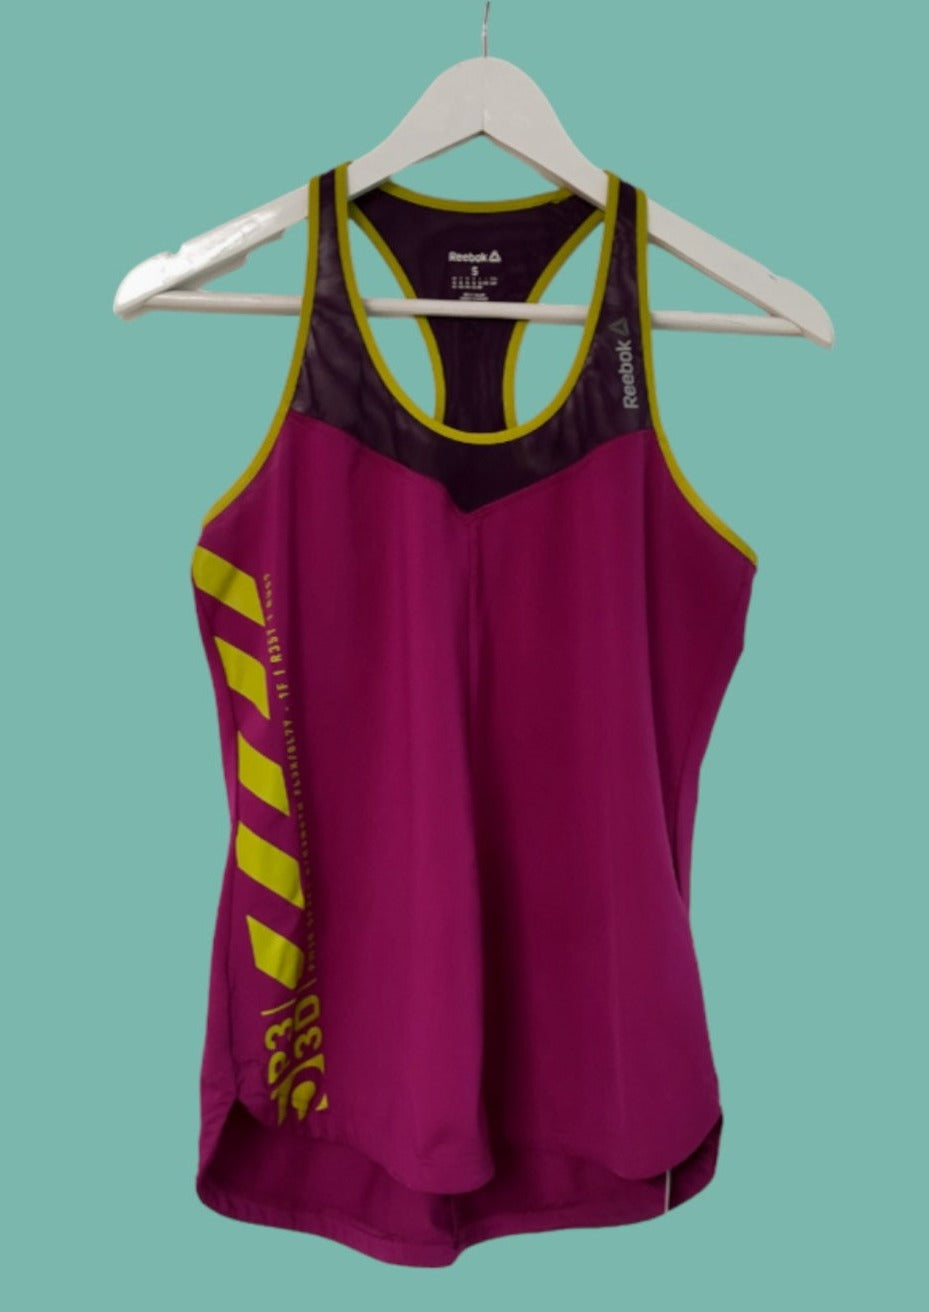 Αμάνικη, Γυναικεία Αθλητική Μπλούζα REEBOK σε Μωβ Χρώμα (Small)